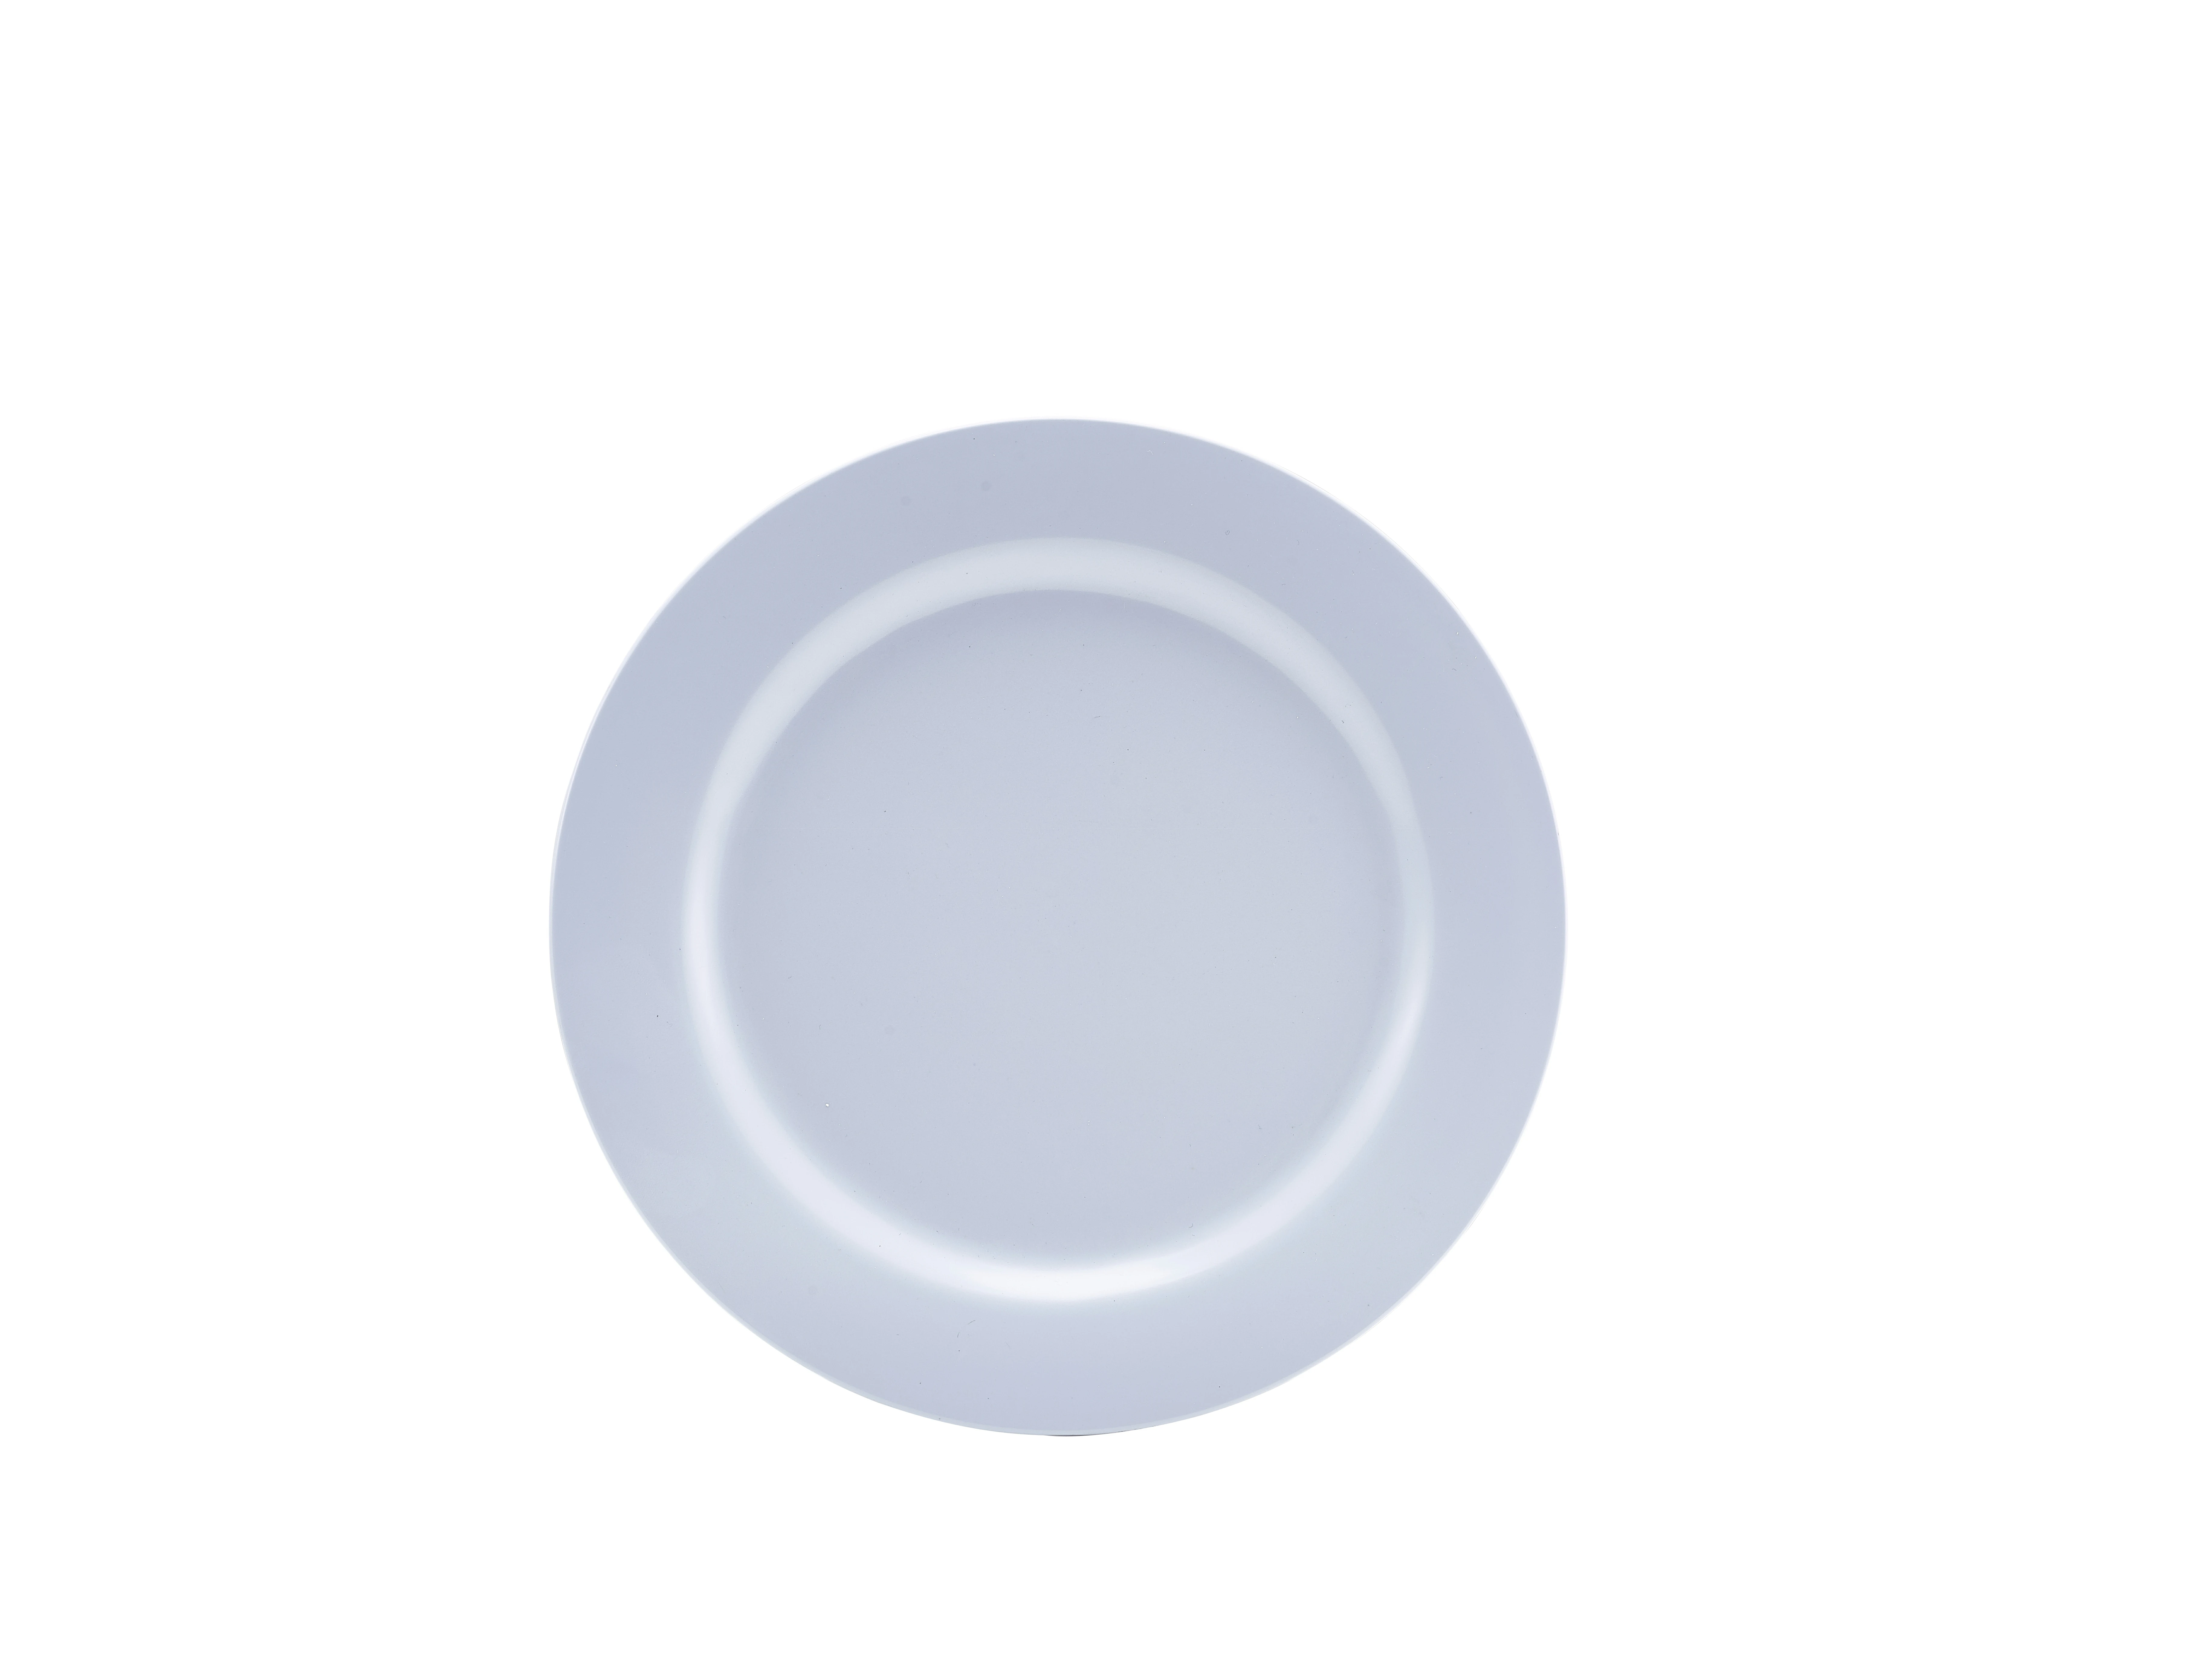 Genware 9" Melamine Dinner Plate White